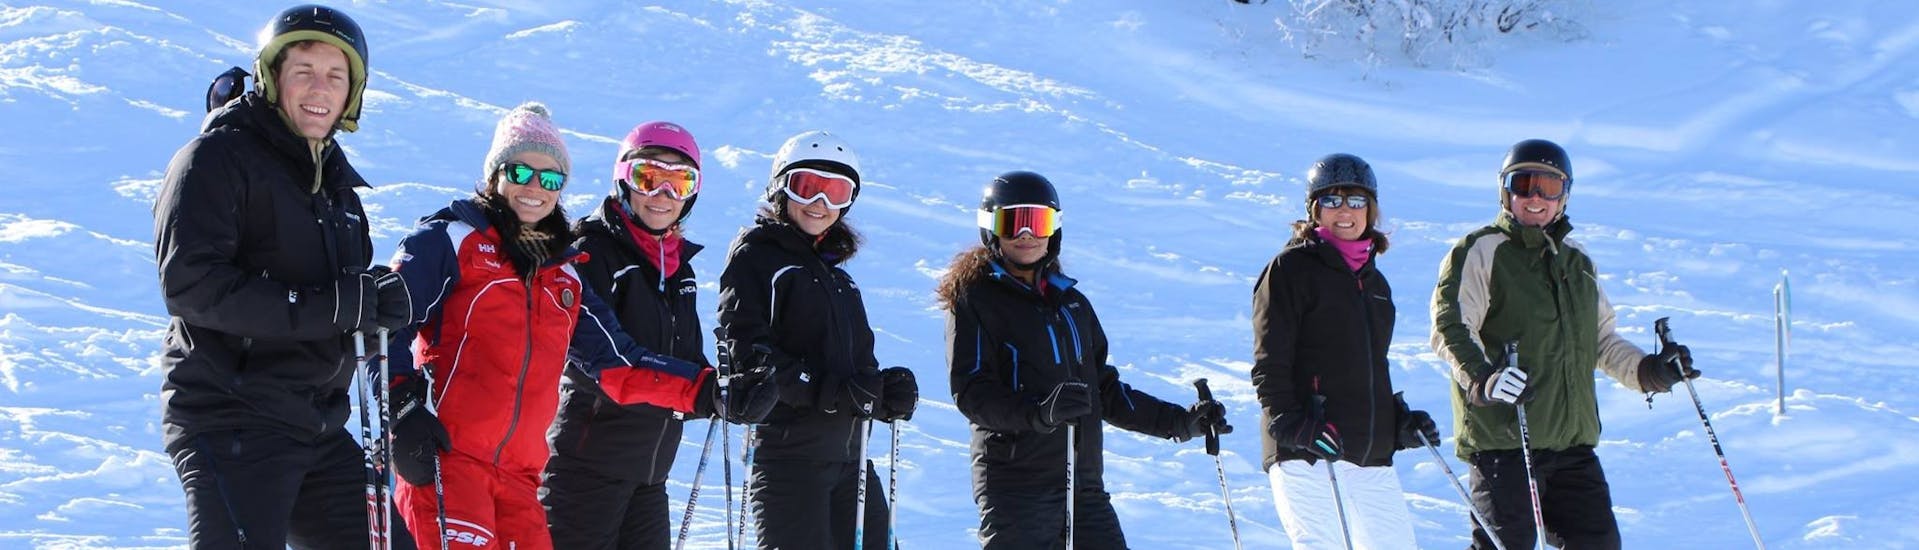 Des skieurs prennent la pose pendant leur Cours de ski Adultes (dès 13 ans) pour Tous niveaux avec ESF La Tania.